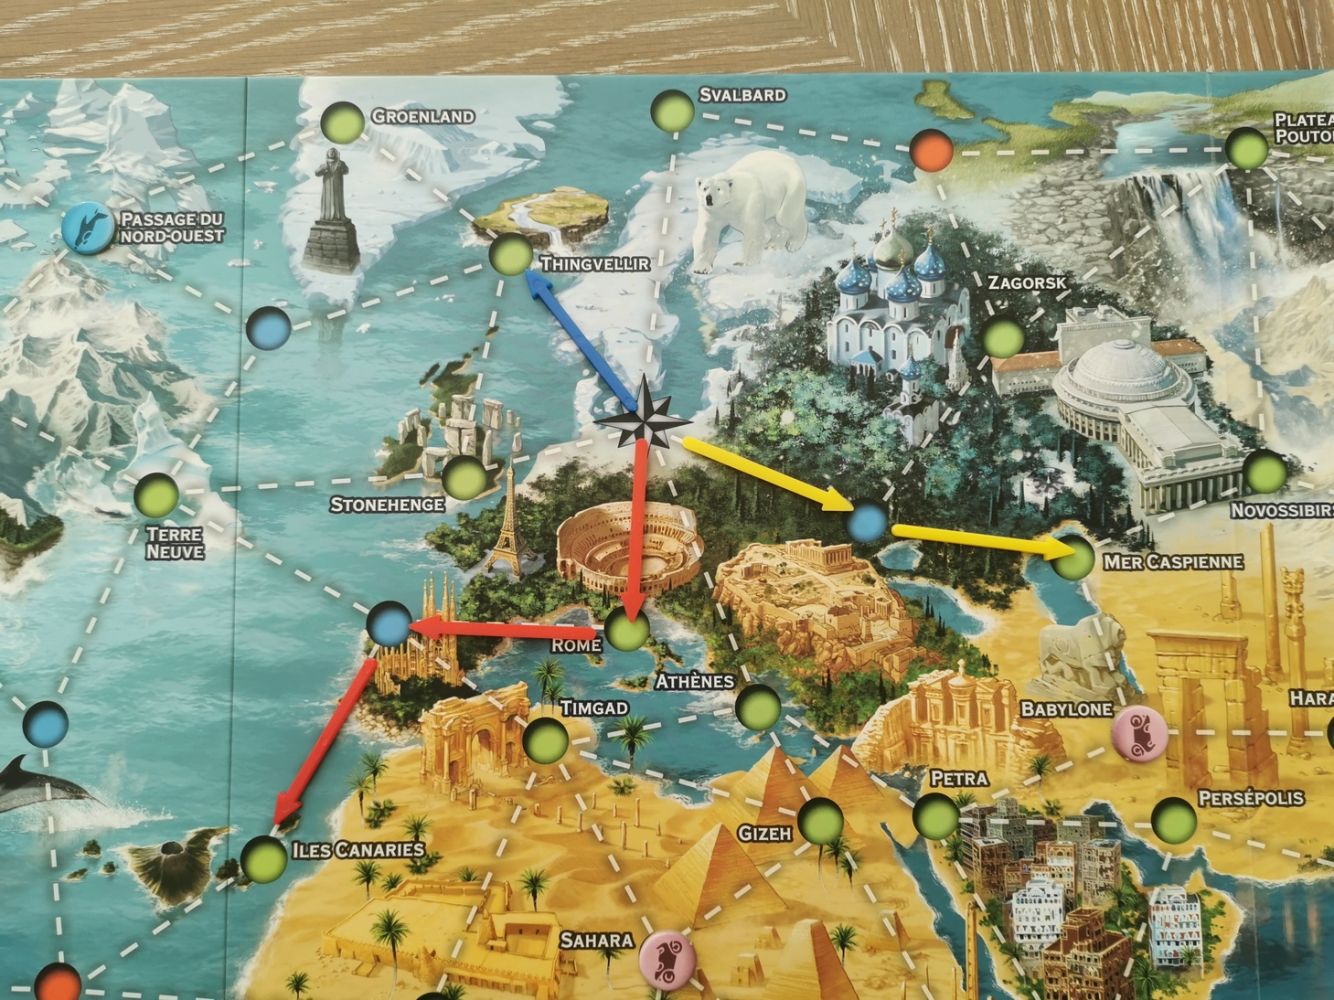 3 options pour le joueur suivant : continuer l’expédition bleue au départ de l’Islande (Thingvellir) , la rouge des Canaries ou la jaune de la mer Caspienne.